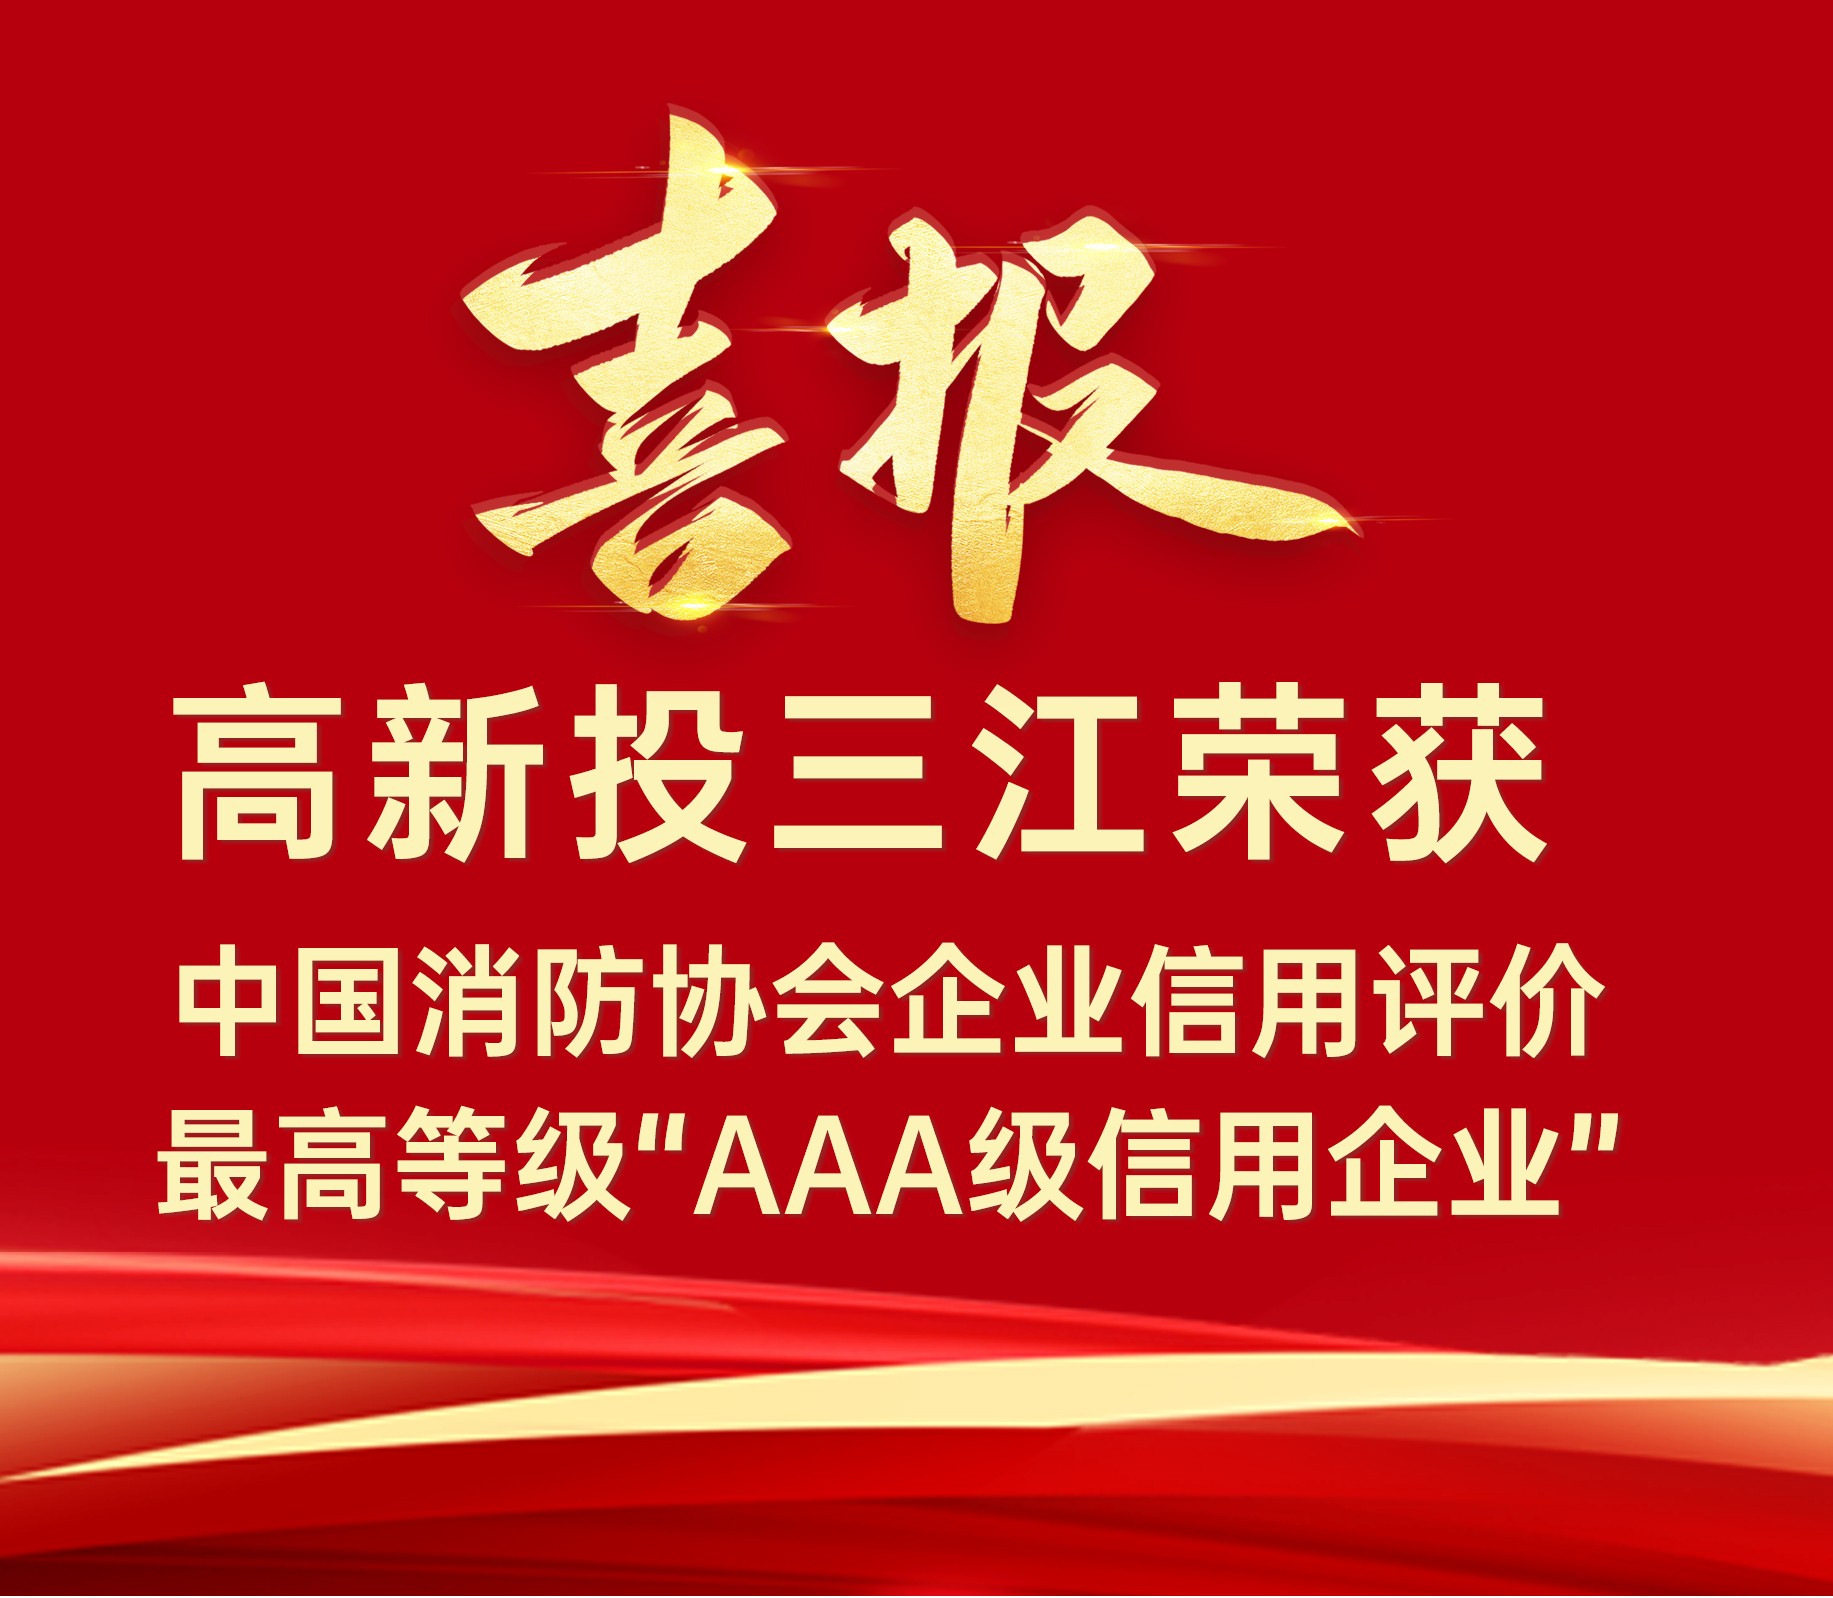 澳门六盒宝典2022年最新版开奖直播连续荣获中国消防协会企业信用评价最高等级“AAA级信用企业”